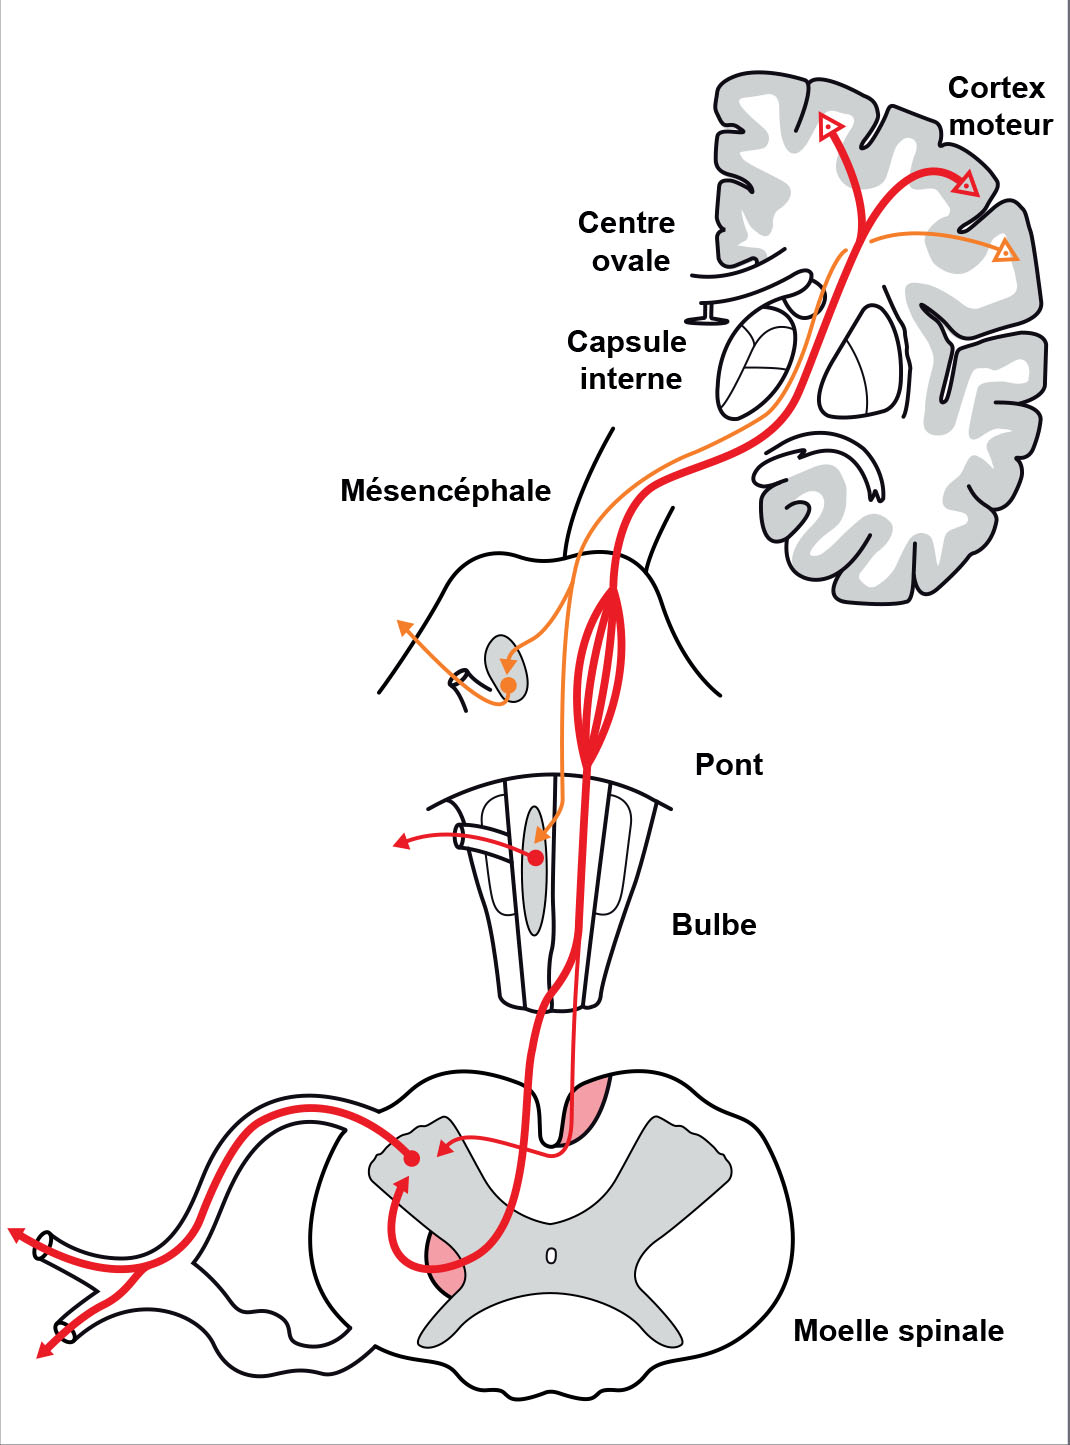 Anatomie des voies de la motricité volontaire - Figure 1